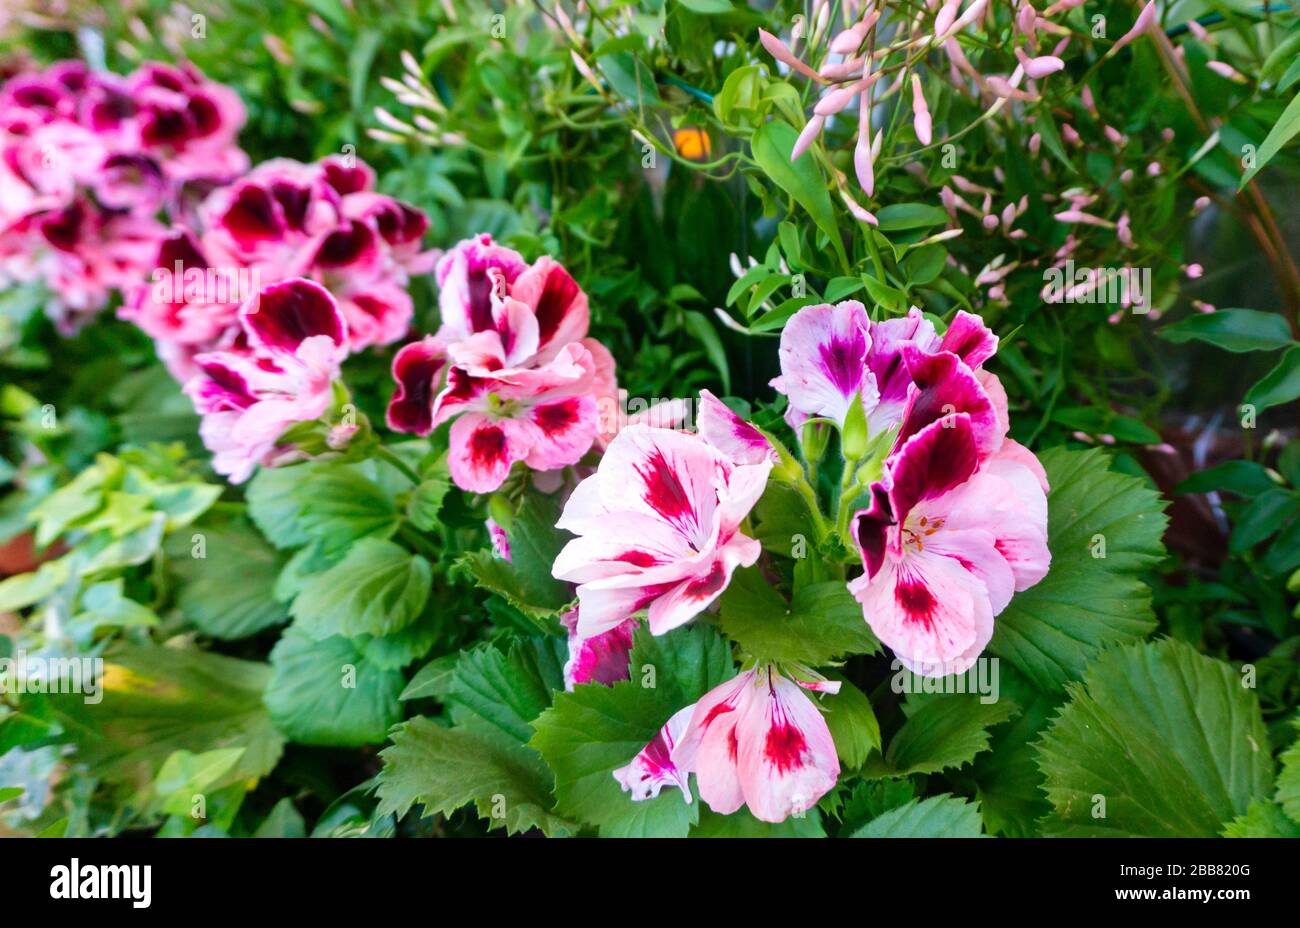 Image lumineuse d'une plante géranium-ange sur un fond de plantes vertes.  Bicolore blanc-rose ange pelargonium dans un beau jardin de fleurs.  Pelargoni Photo Stock - Alamy